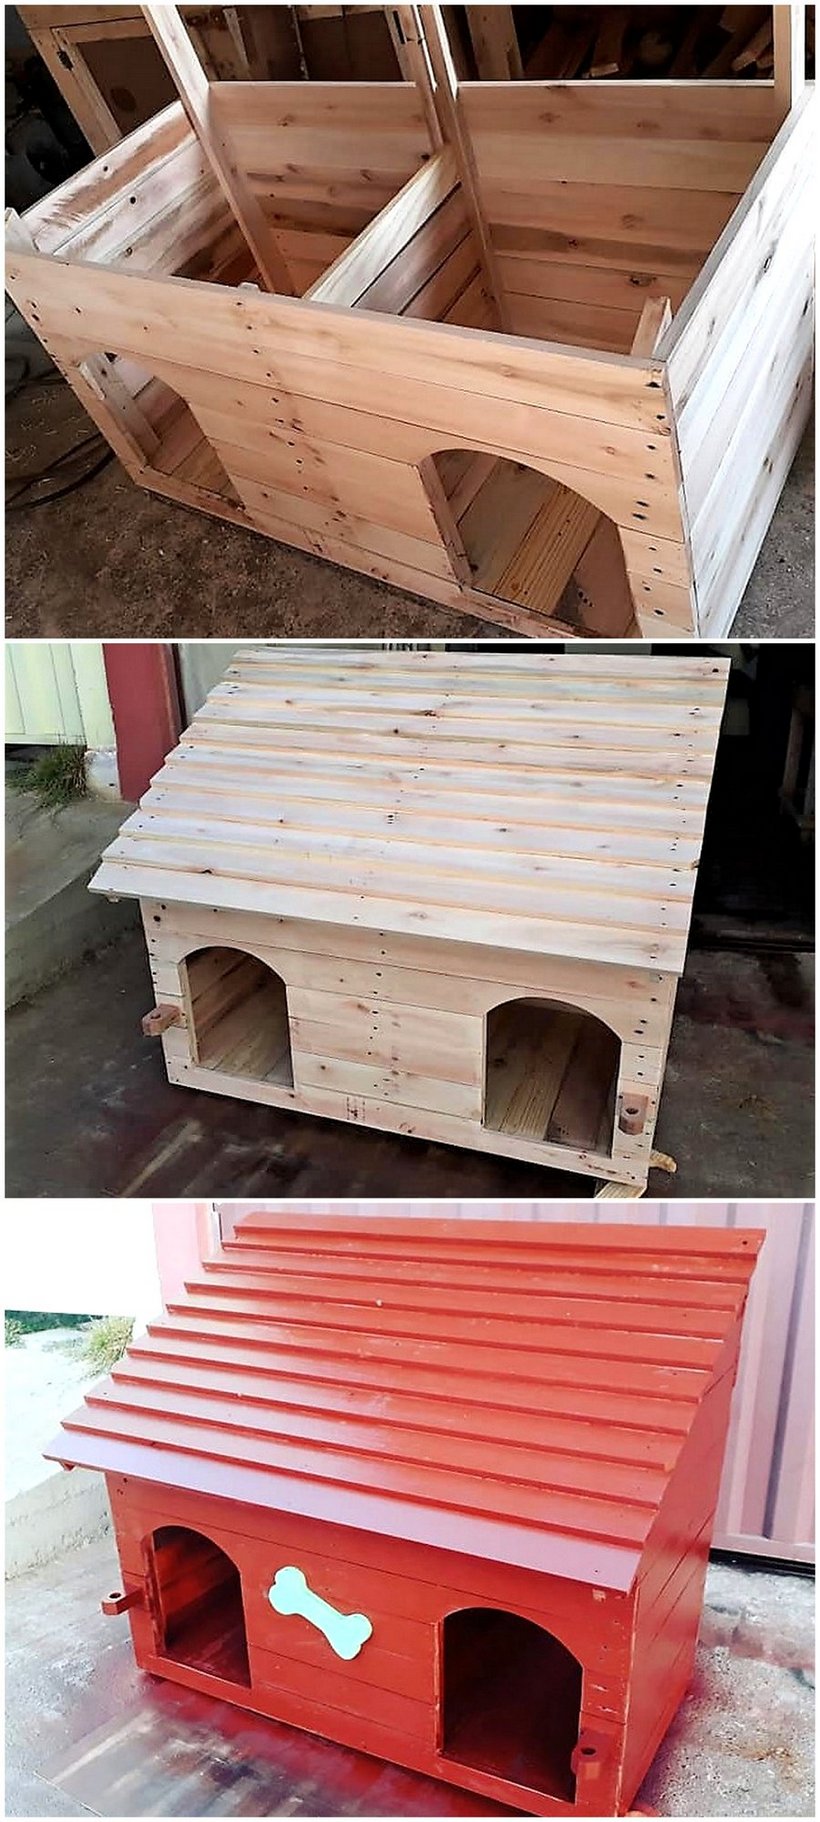 DIY pallet dog house